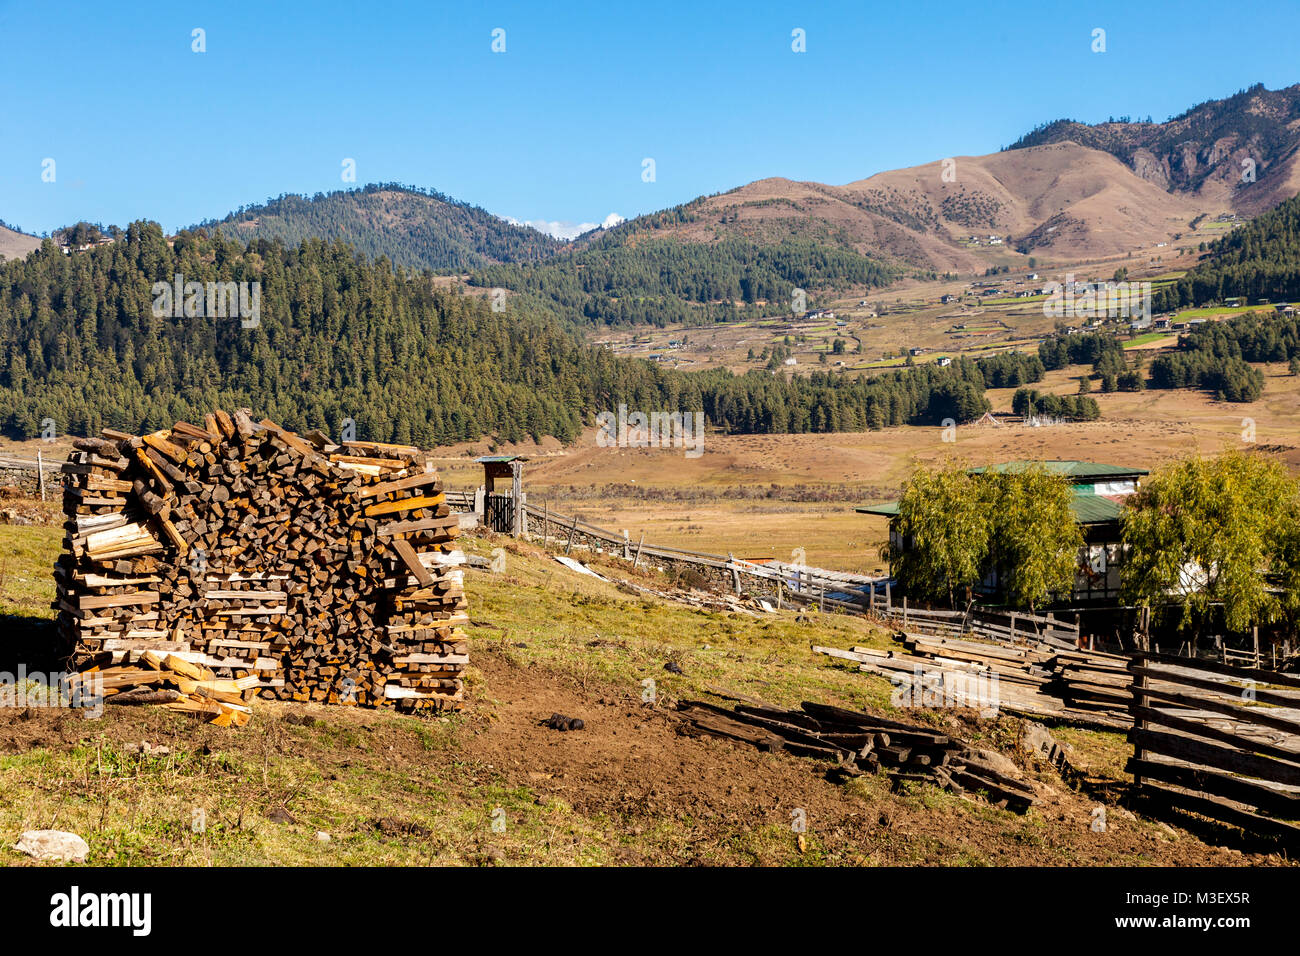 Phobjikha, Bhután. Pila de leña. Campos agrícolas y asentamientos en la distancia. Foto de stock